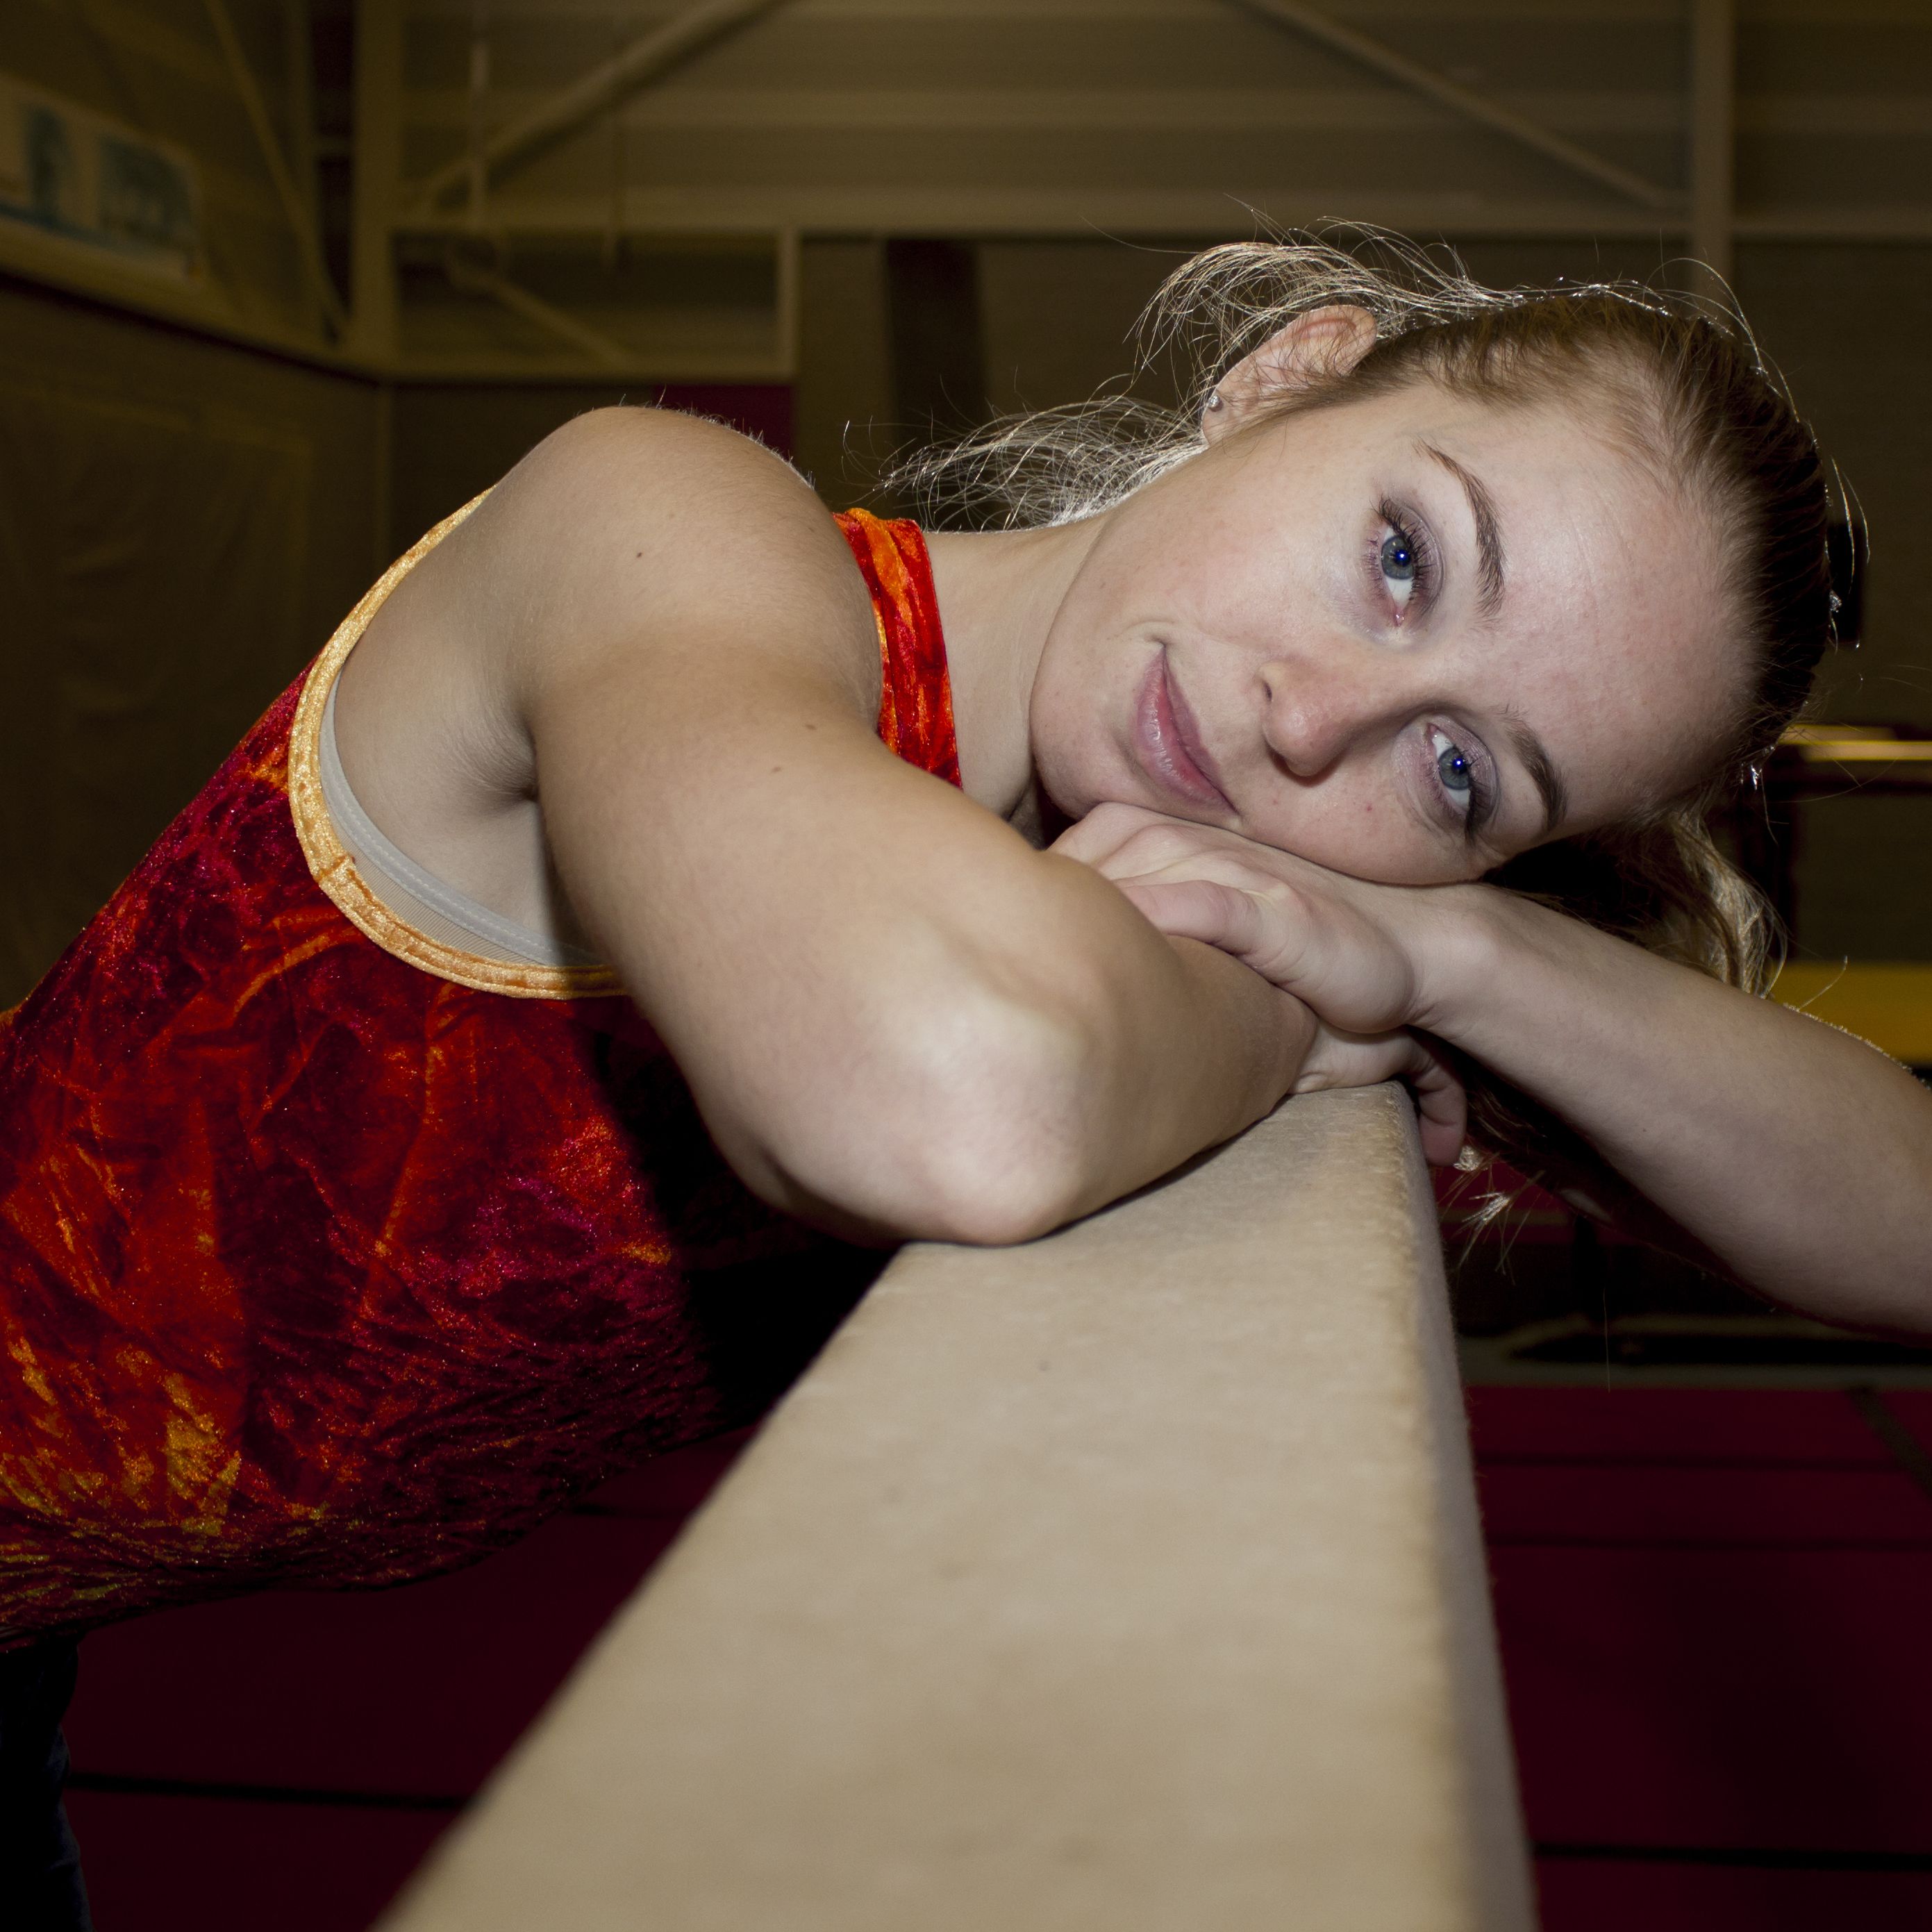 Porn actress career switch helped gymnast Verona van de Leur get her life  back on track | CNN